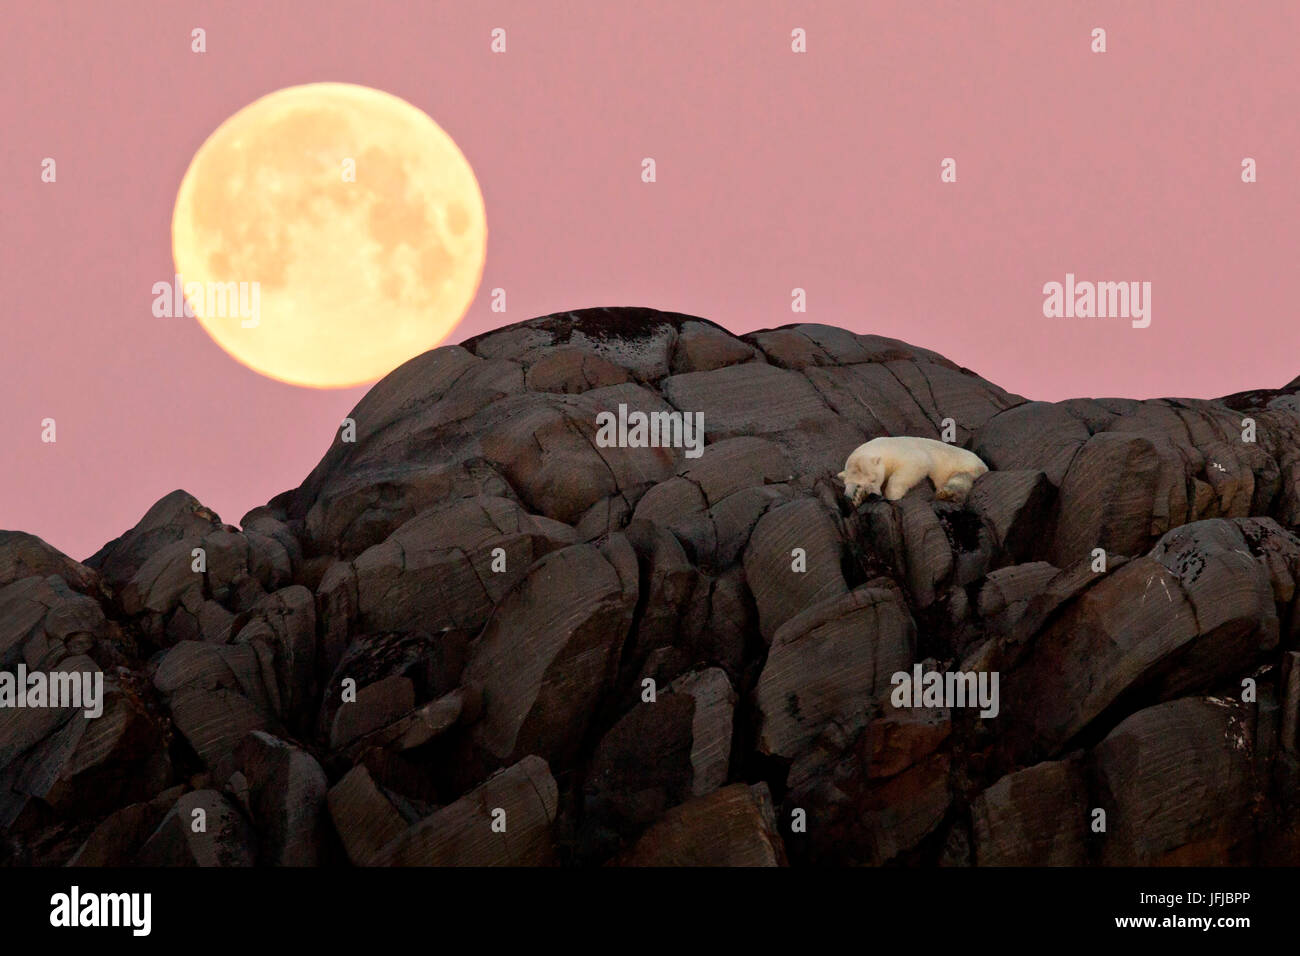 Oso Polar descansa sobre un acantilado en una isla en el alto Ártico, la luna llena se alza justo detrás de él Foto de stock